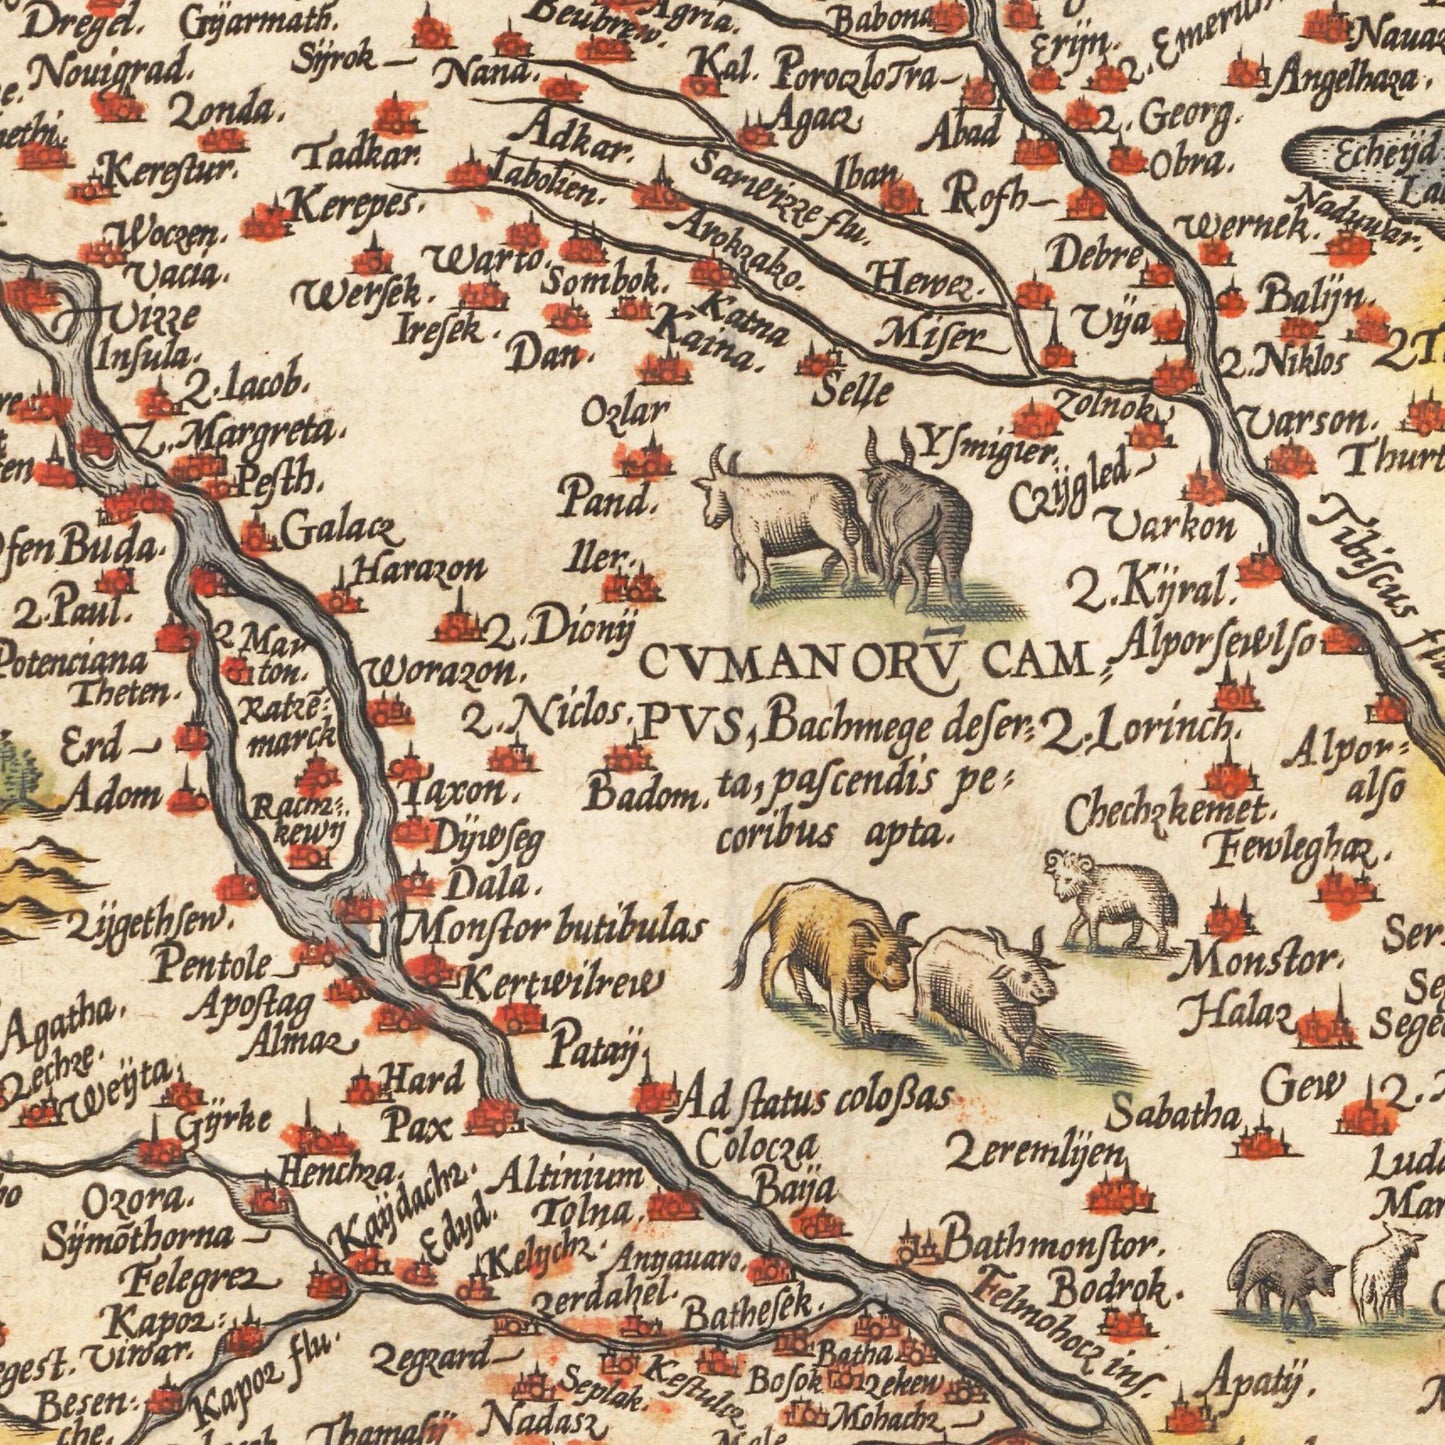 Historische Landkarte Ungarn um 1609